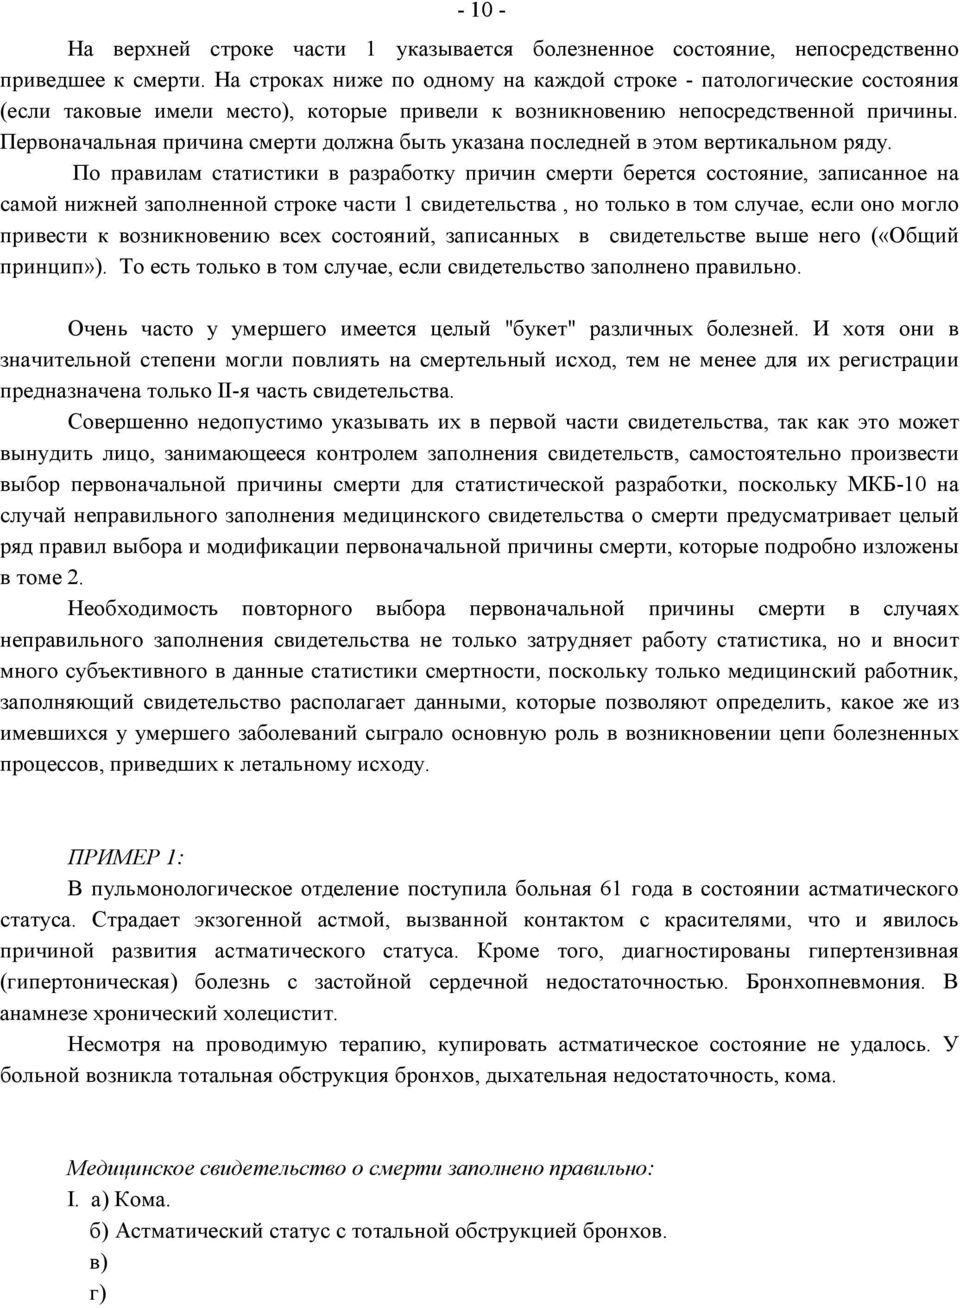 Московский кредитный банк (мкб) о компании - рейтинг надежности, история создания